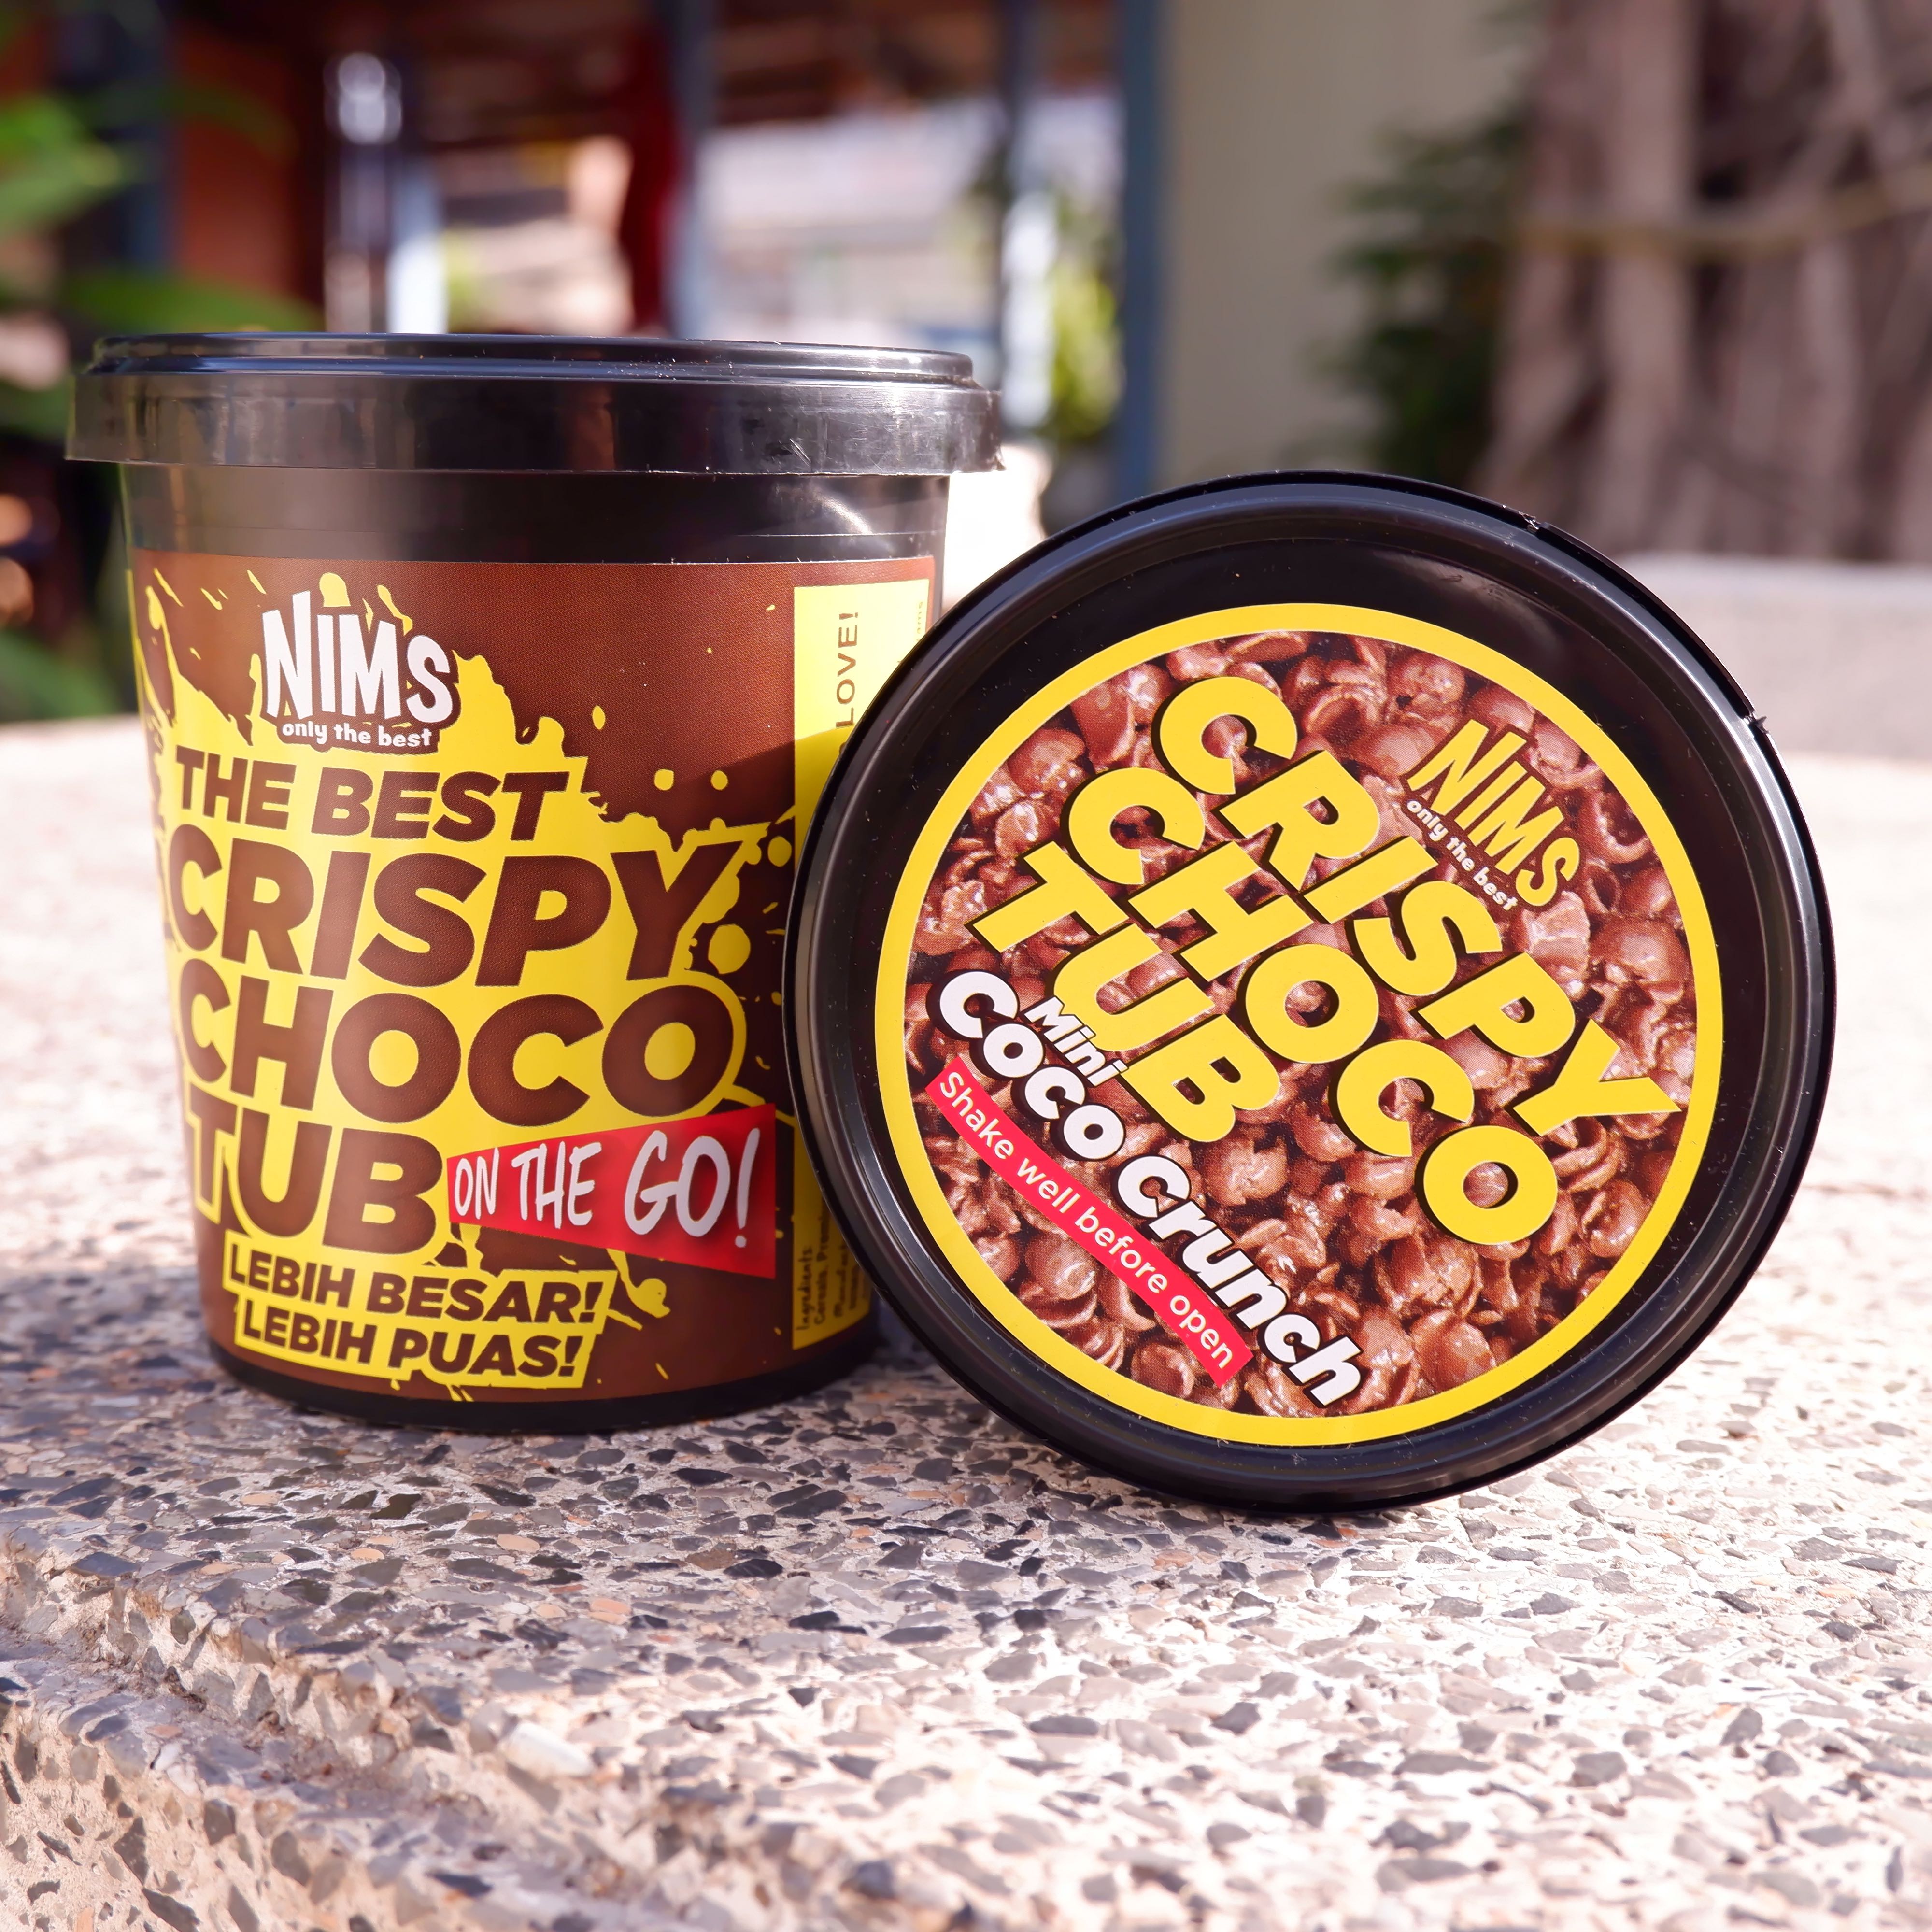 รายละเอียดเพิ่มเติมเกี่ยวกับ NIMS Crispy Choco Tubs โกโก้ครันซ์ราดช็อกโกแลต (Coco Crunch)